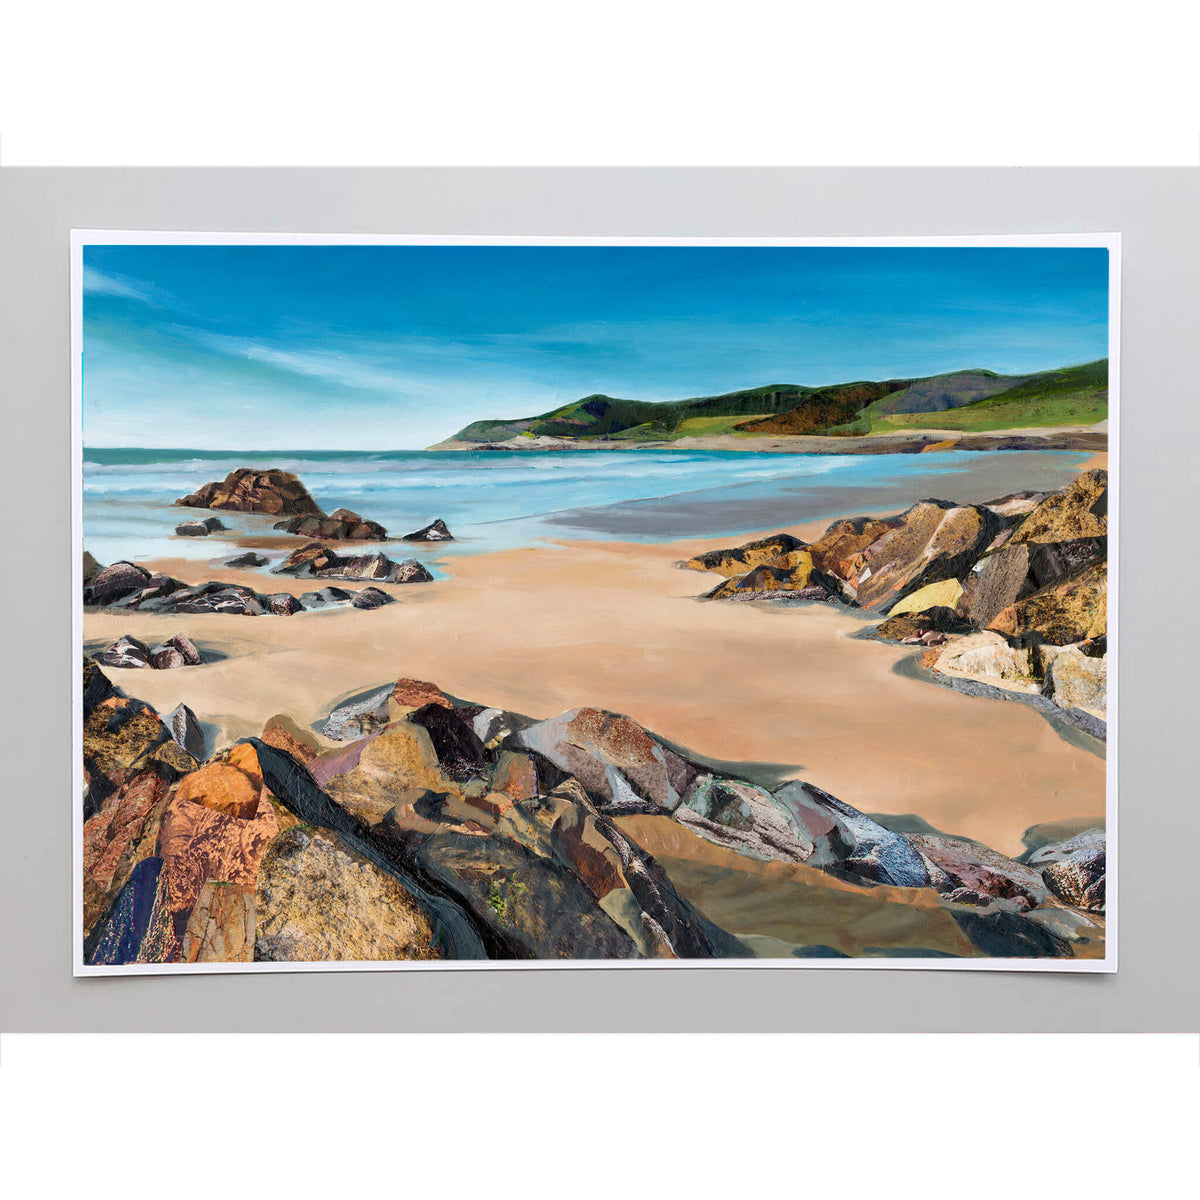 North-Devon-artwork-soft-sand-beach-Woolacombe